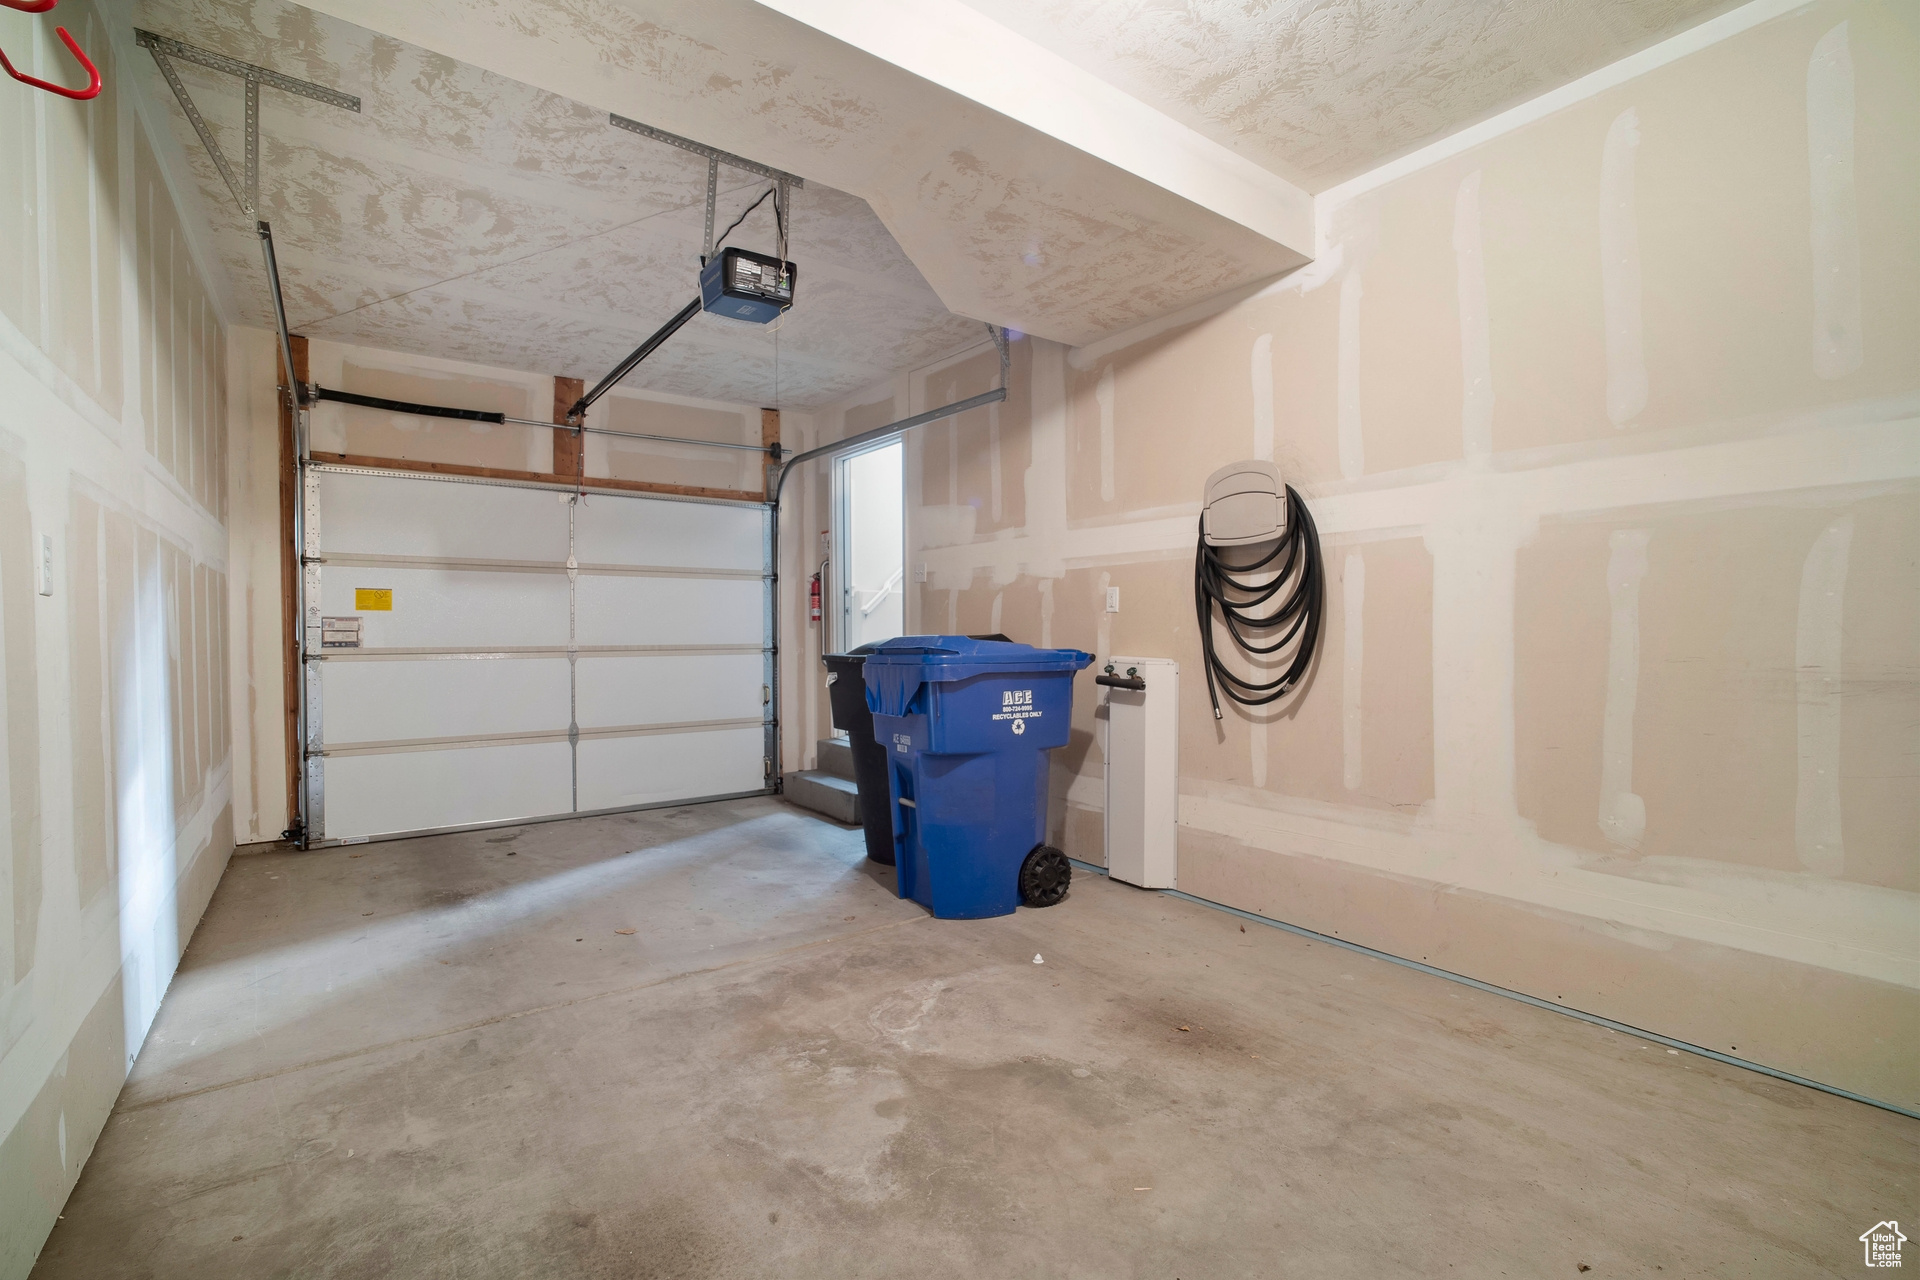 Tandem garage with water spigot, smart design garage door opener.